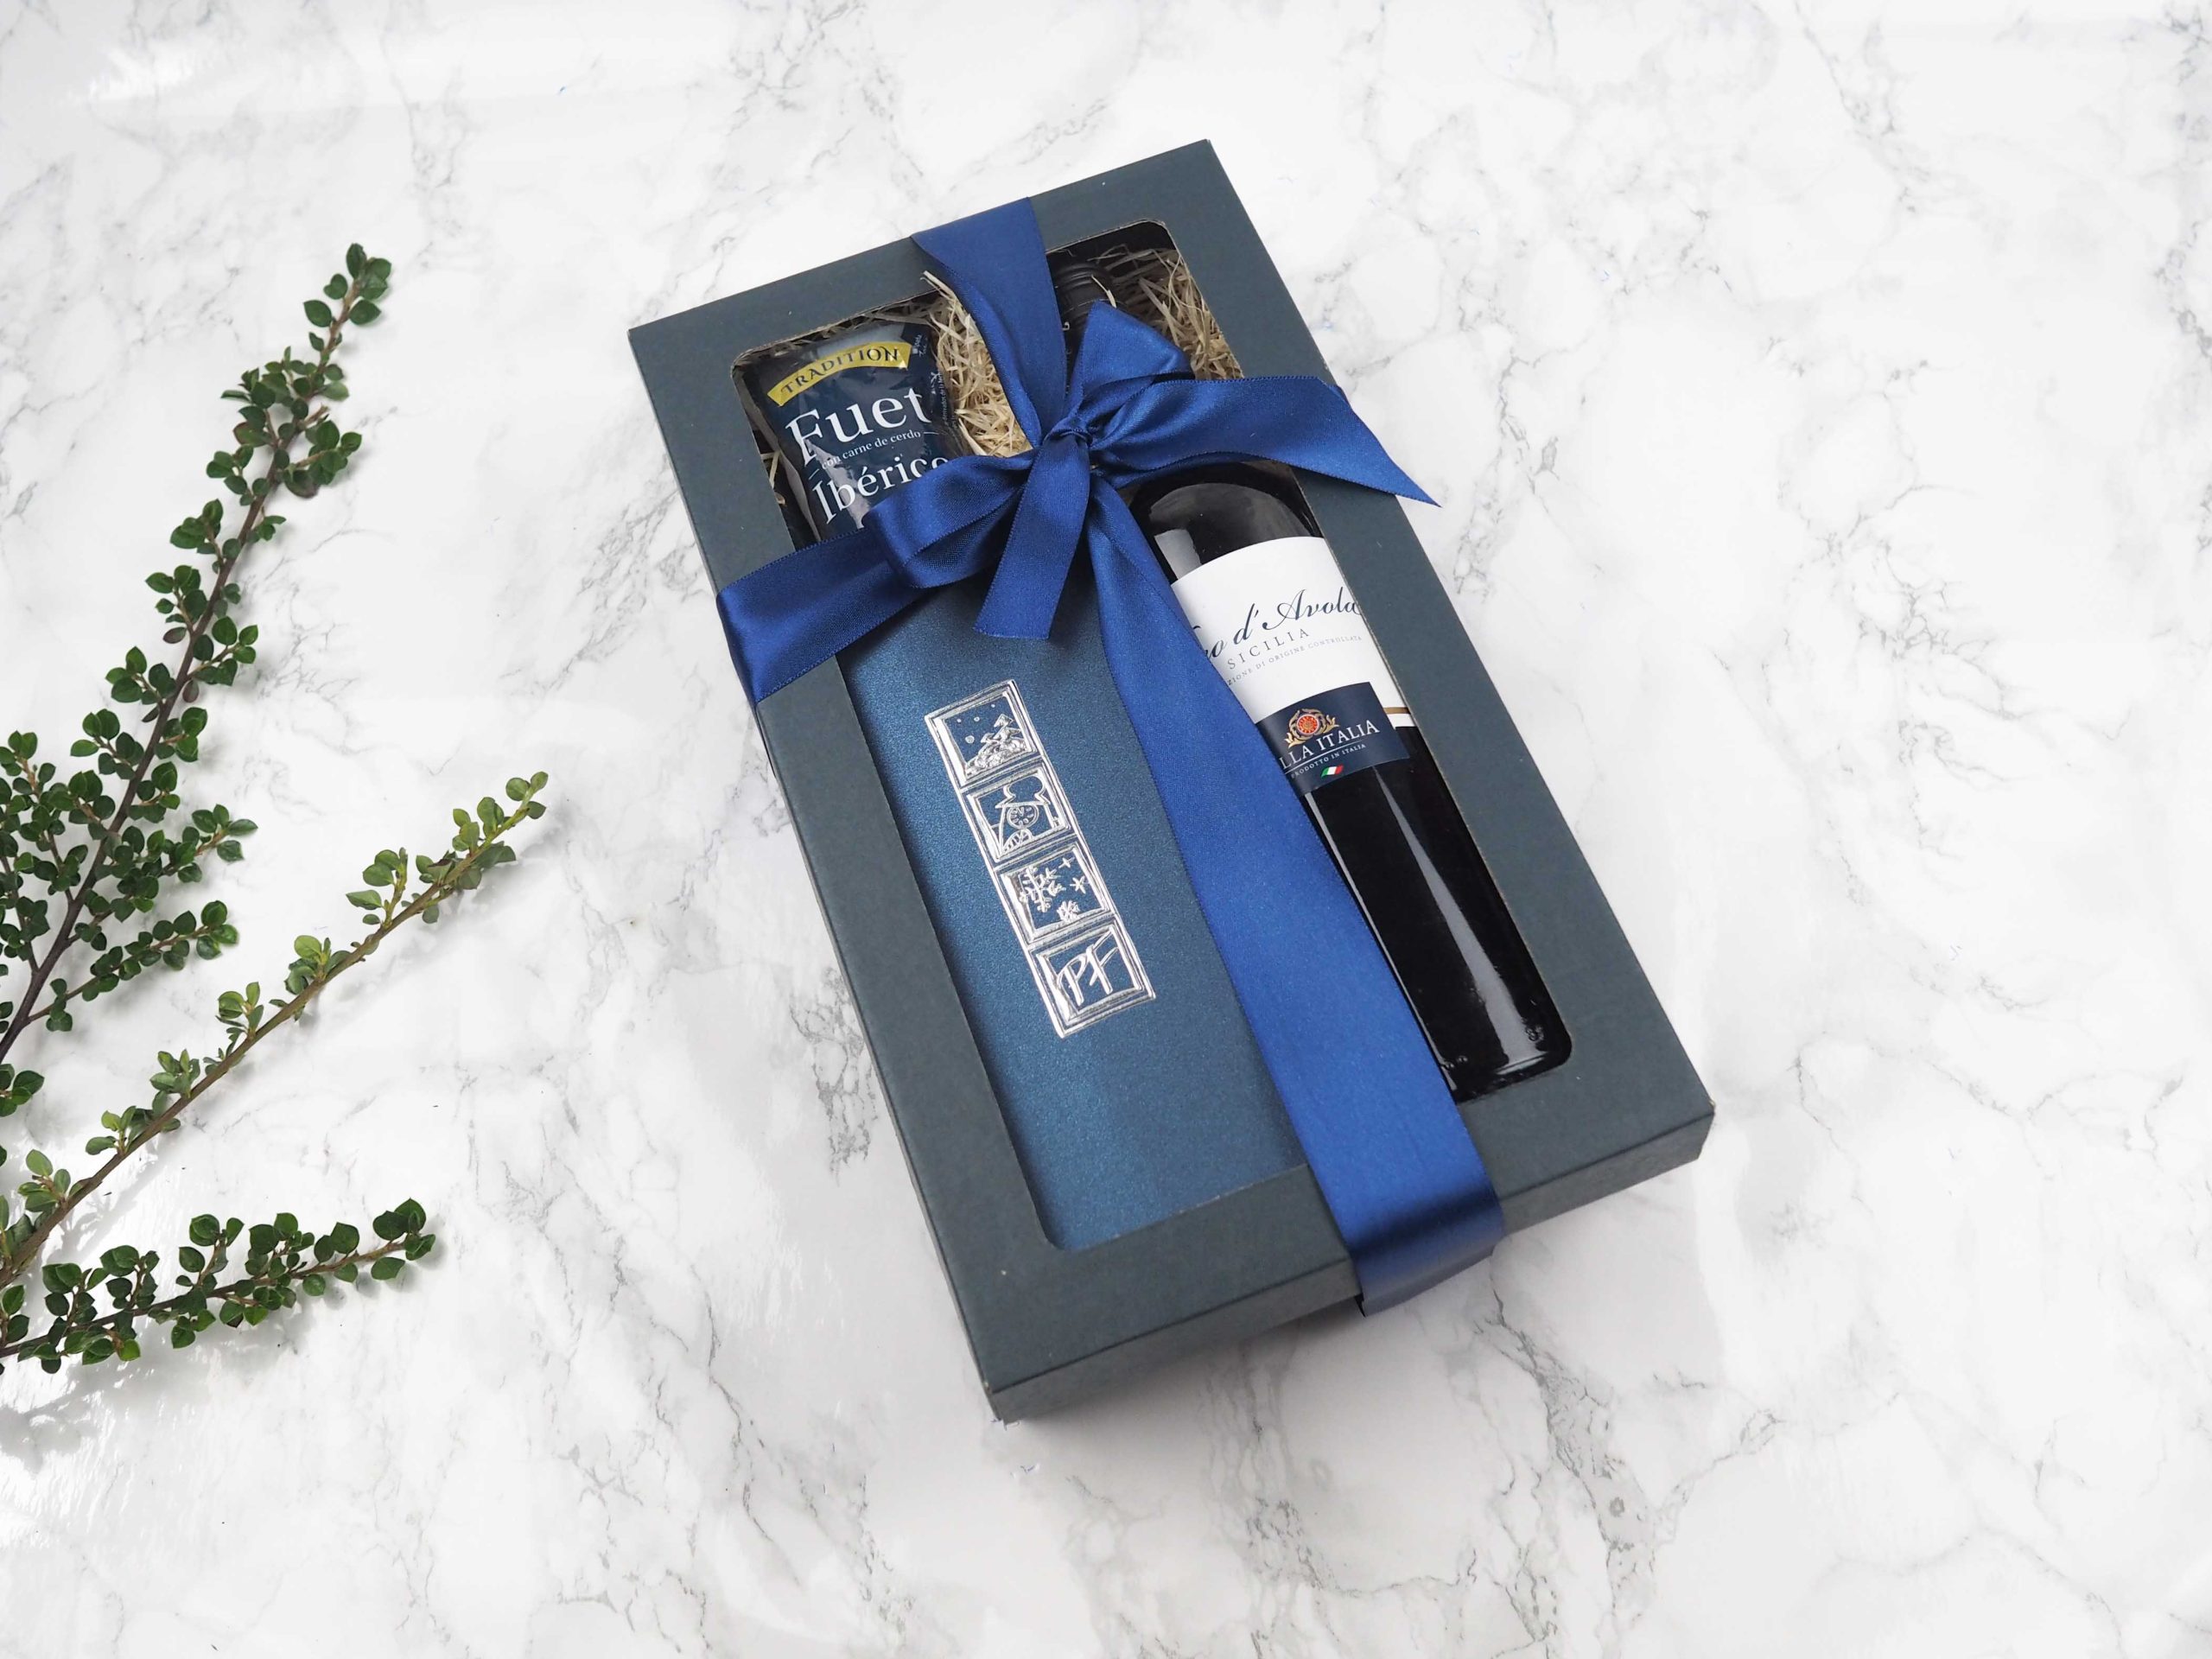 Dárkový balíček Blue Avola v sobě obsahuje novoročenku, fuet Ibérico a červené italské víno Nero di Avola.